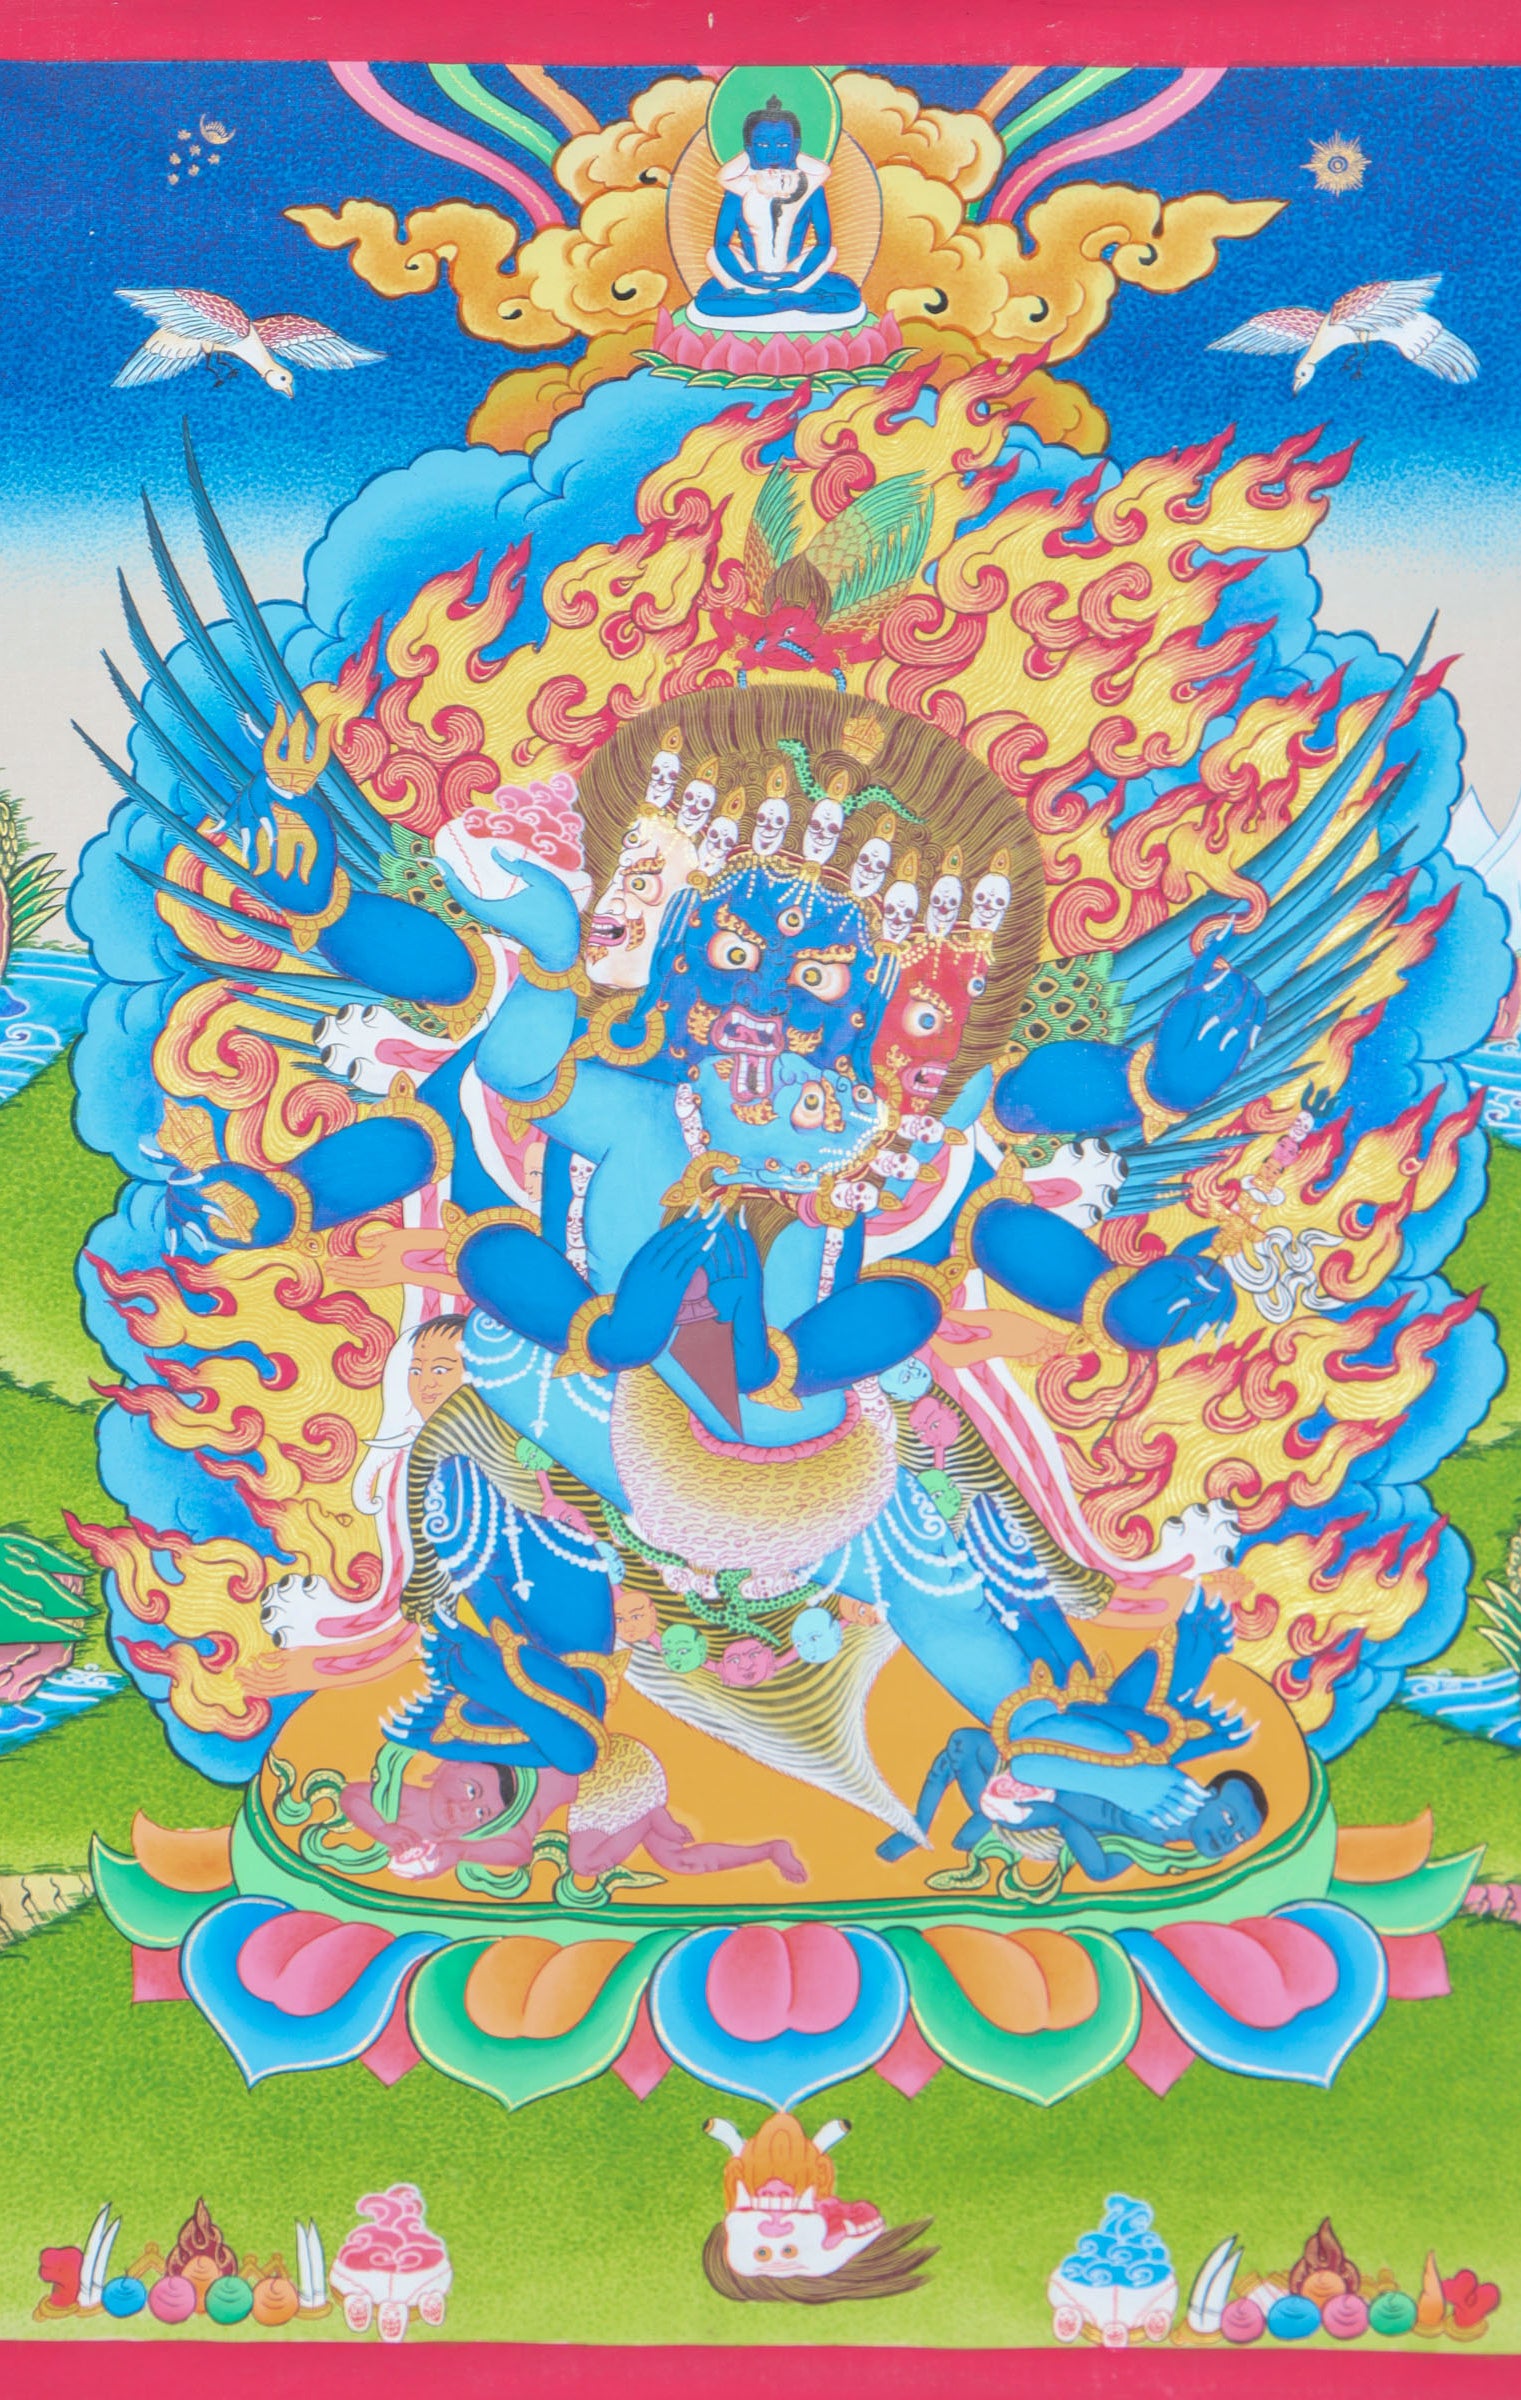 Vajrakilaya Thangka Painting for spiritual growth.